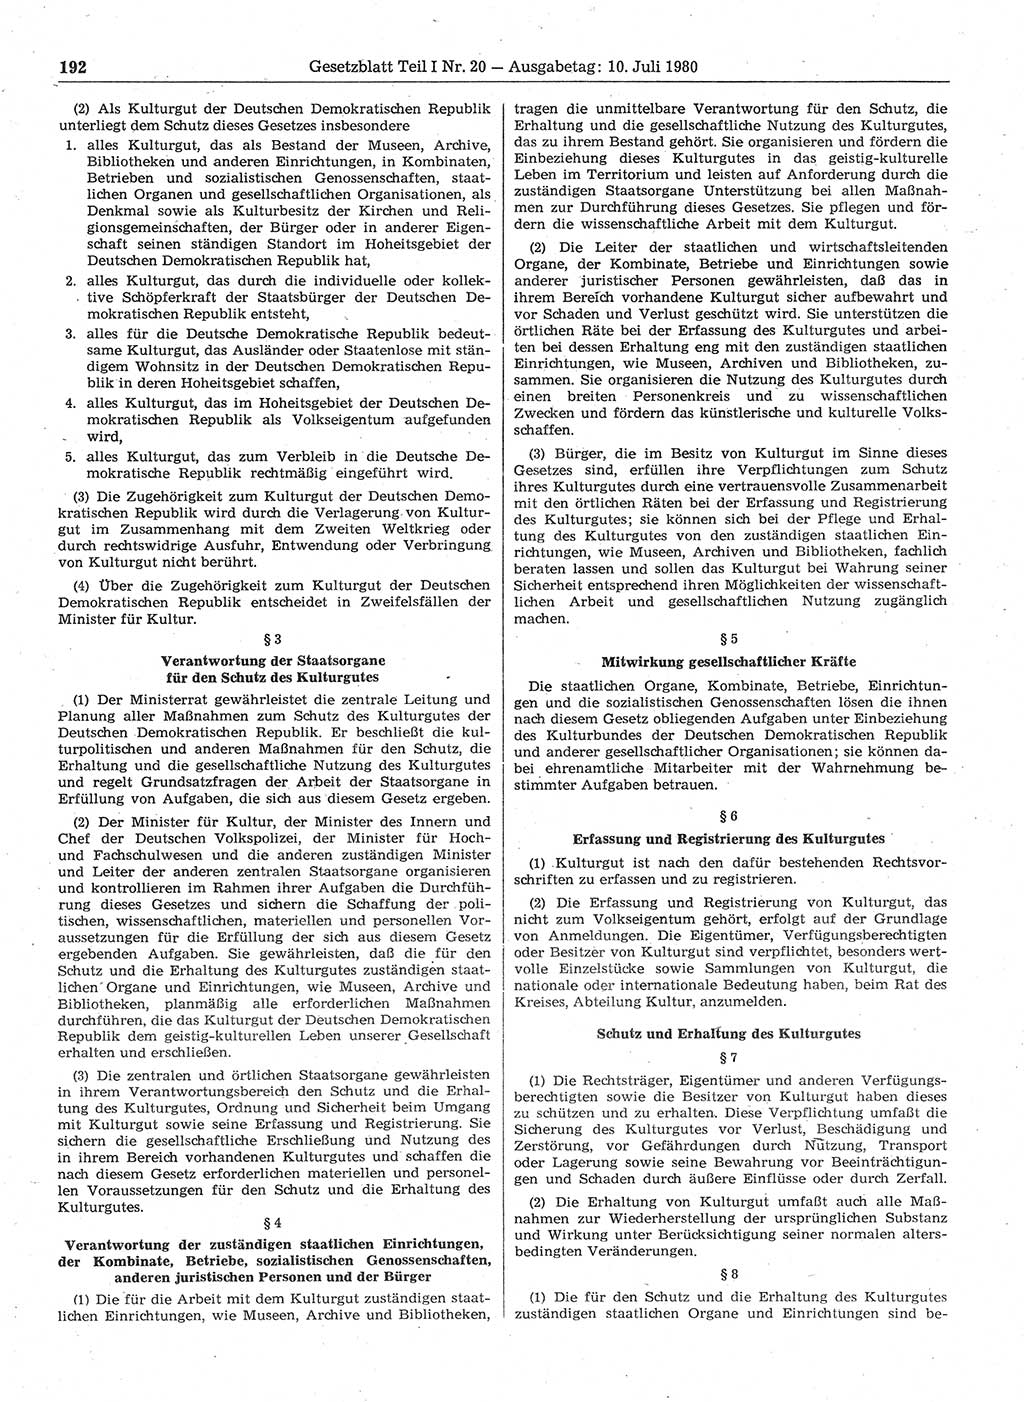 Gesetzblatt (GBl.) der Deutschen Demokratischen Republik (DDR) Teil Ⅰ 1980, Seite 192 (GBl. DDR Ⅰ 1980, S. 192)